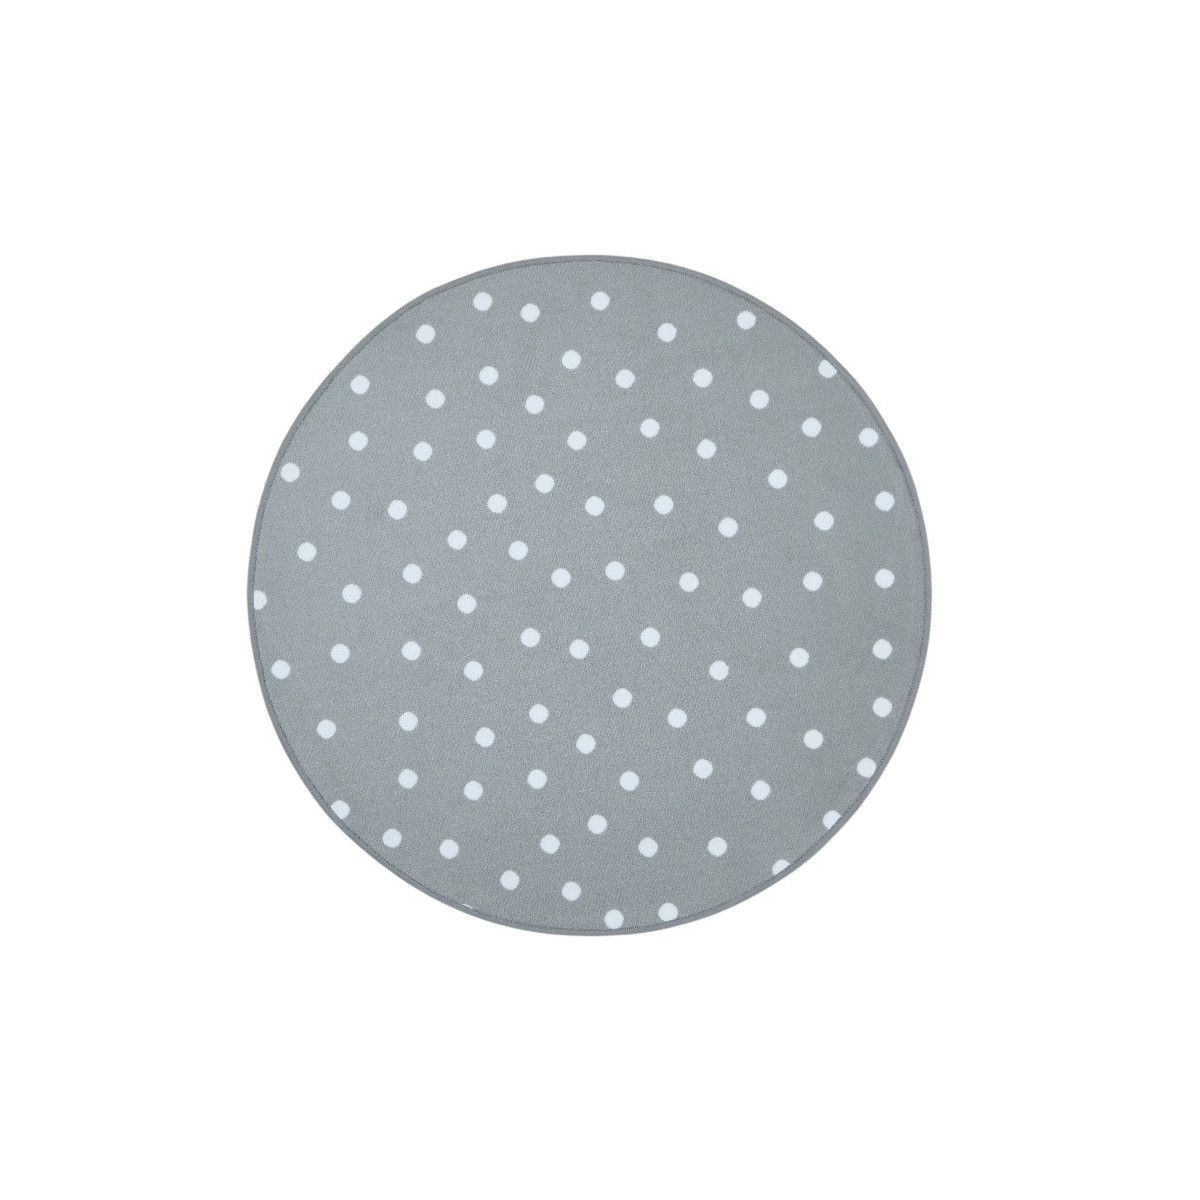 Kusový dětský koberec Puntík šedý kruh